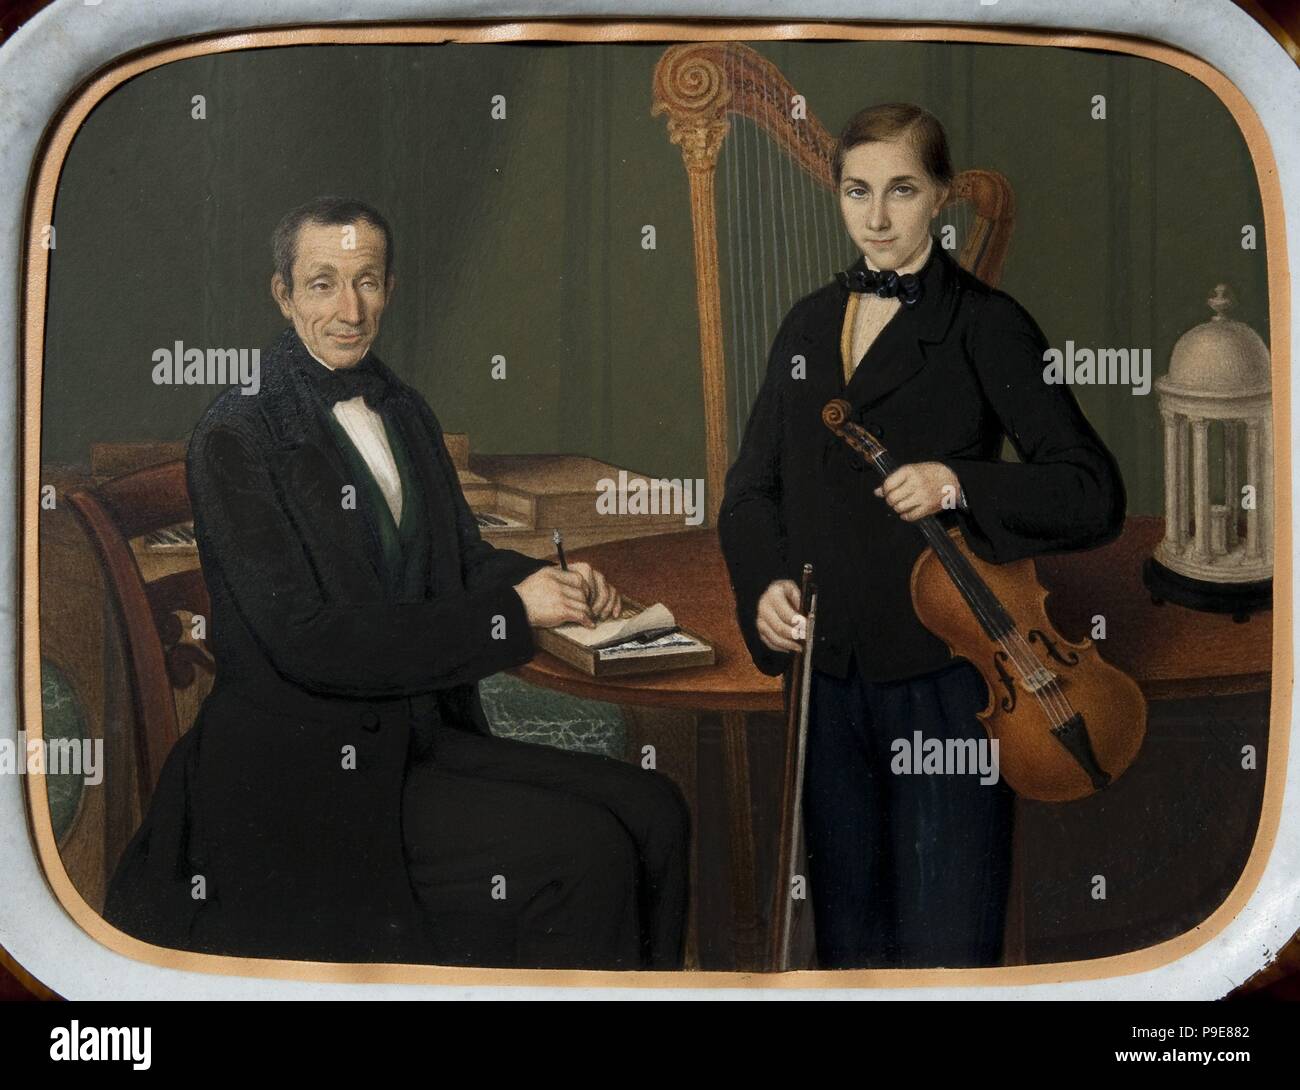 Jaume i Carles Isern, músicos.Siglo XIX. Colección privada. Stock Photo